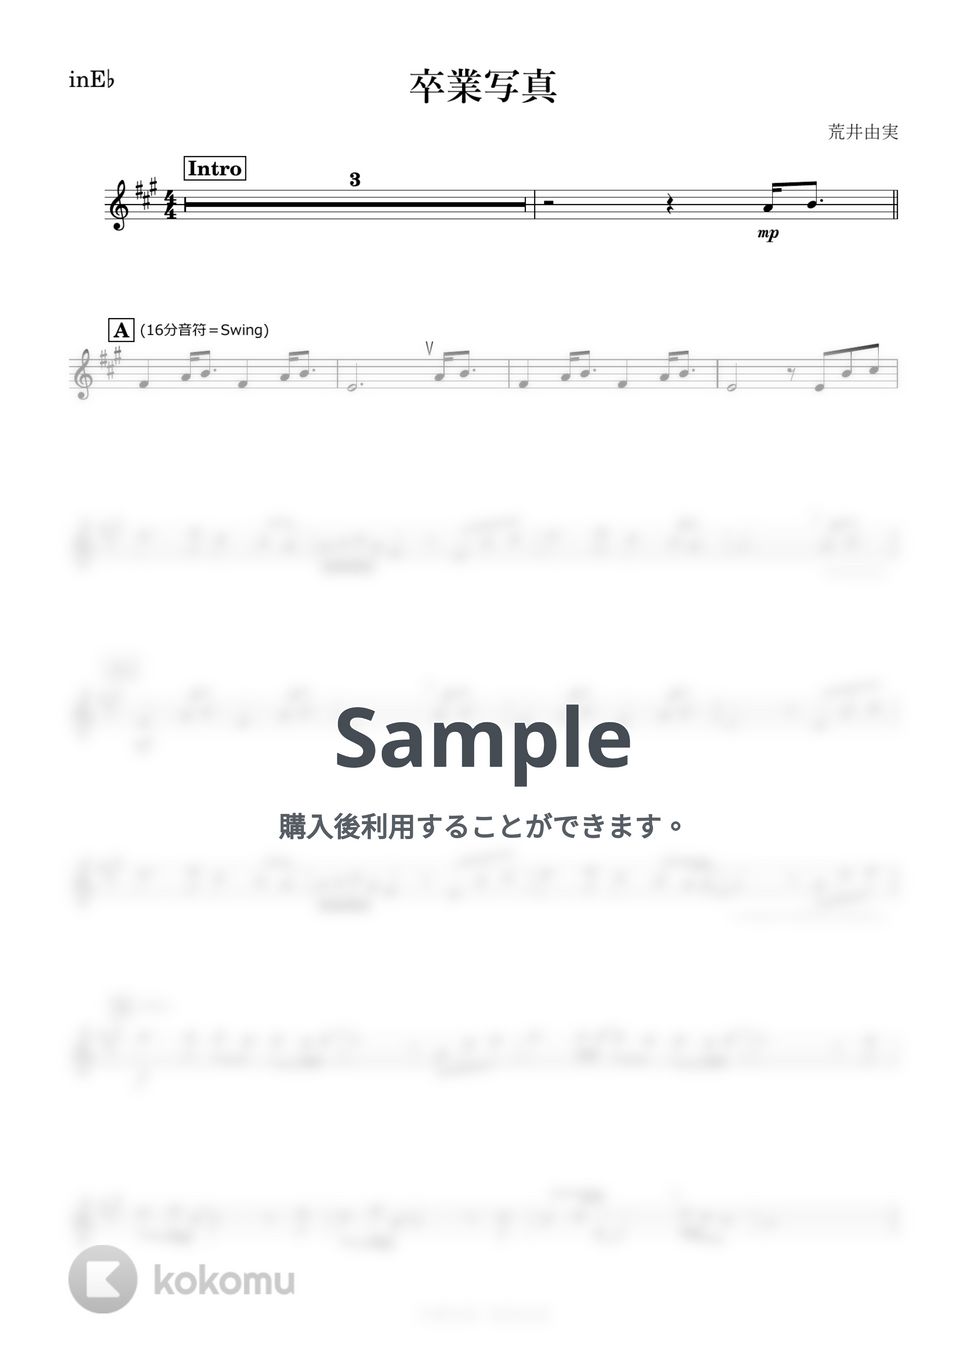 松任谷由実 - 卒業写真 (E♭) by kanamusic